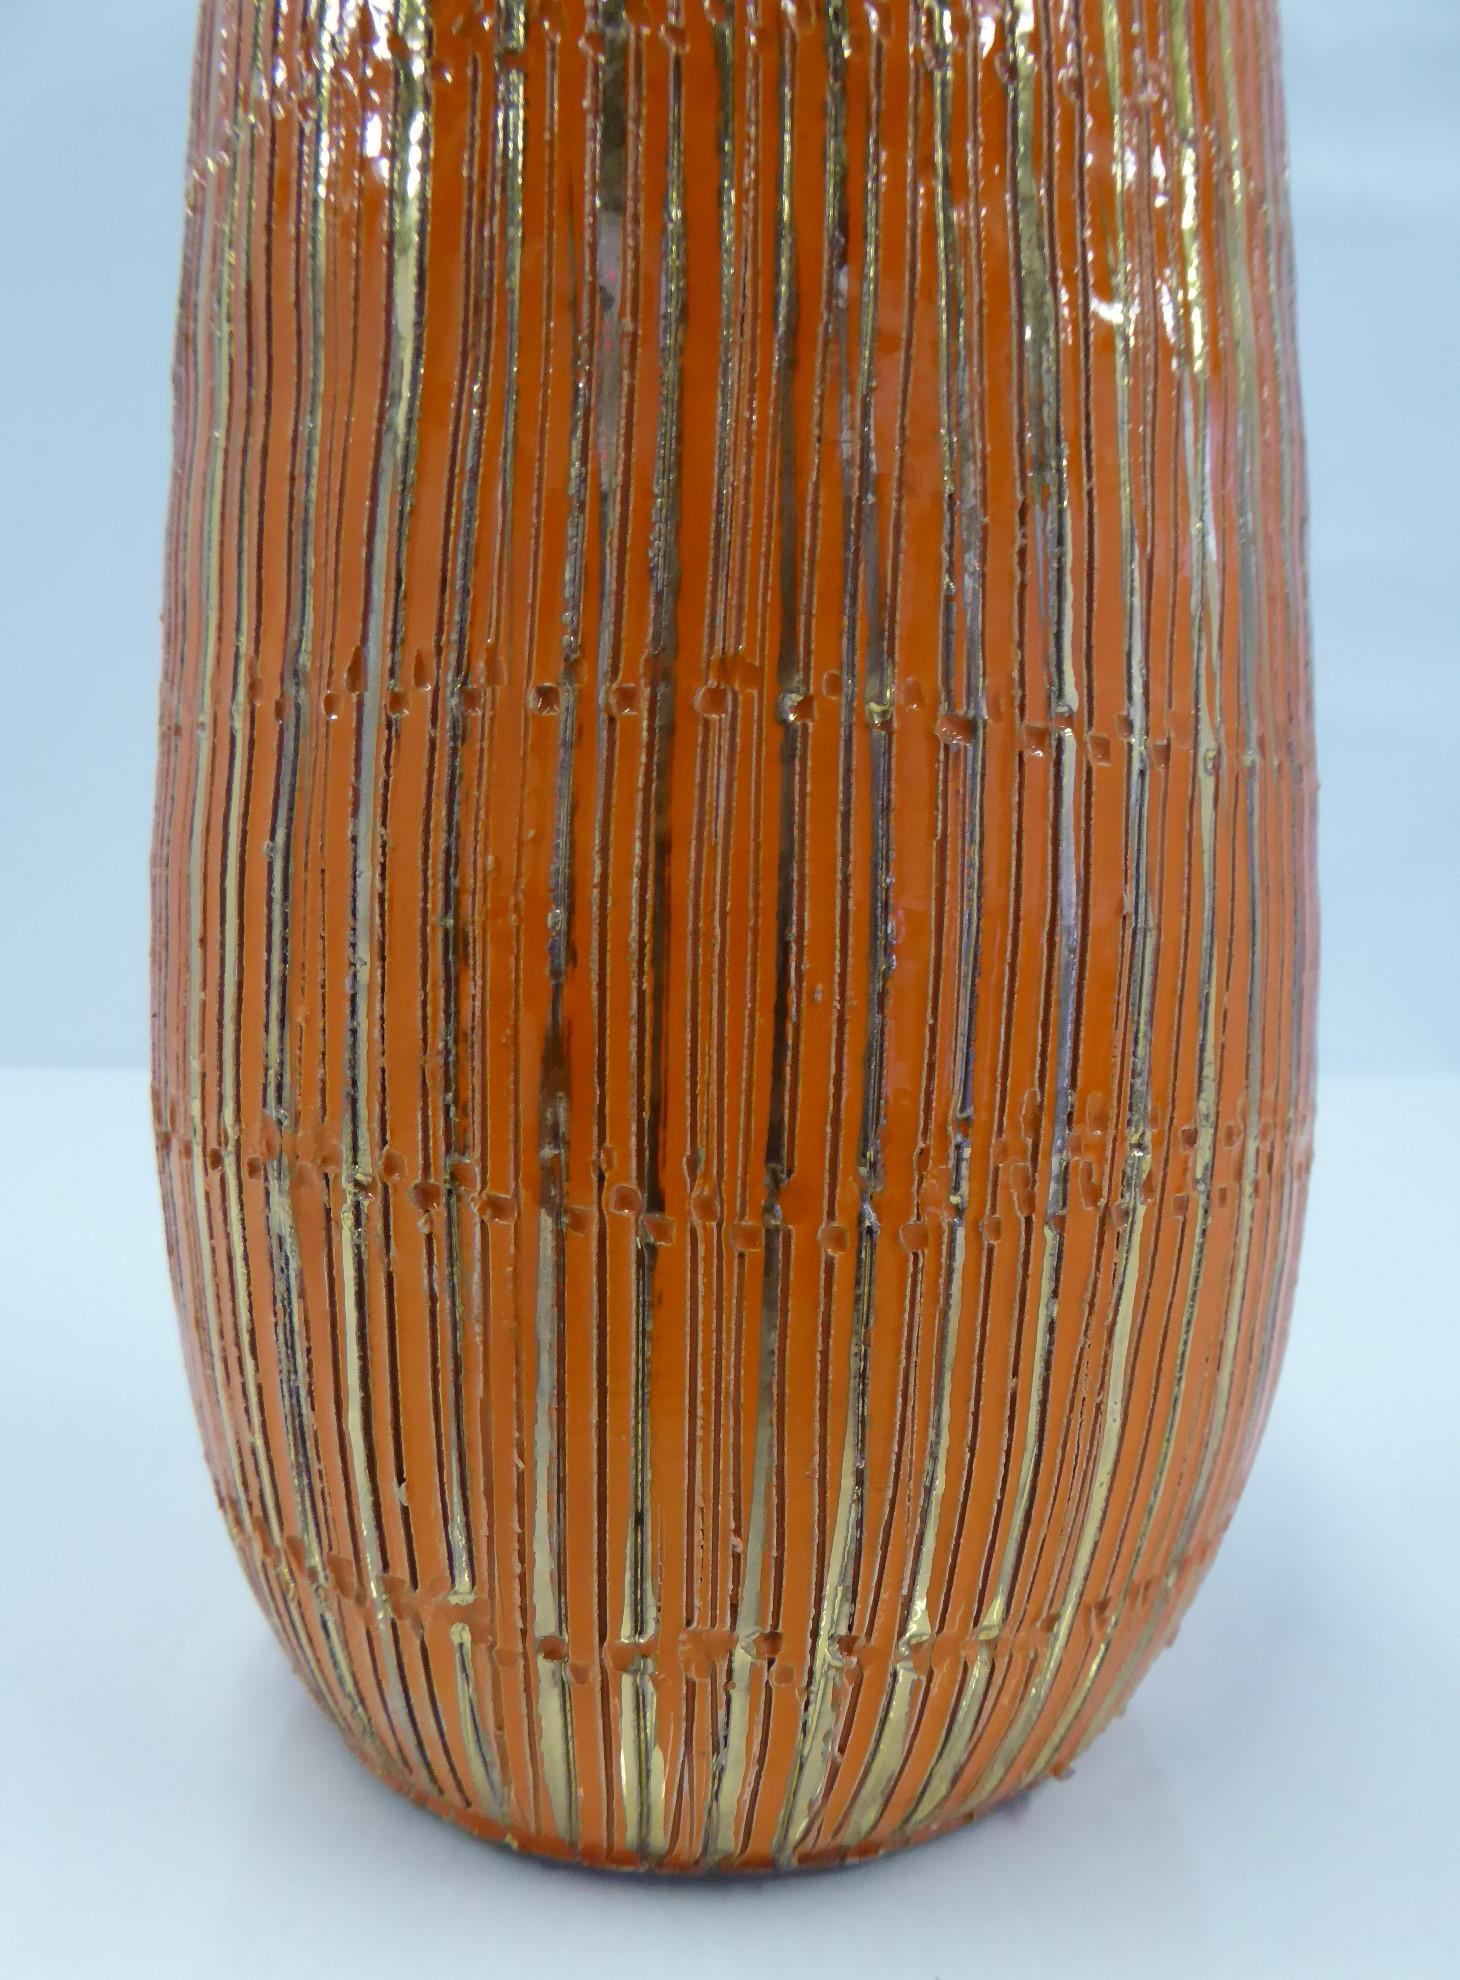 Aldo Londi Seta Series for Bitossi Modern Sgraffito Ceramic Vase, Italy, 1950s For Sale 1